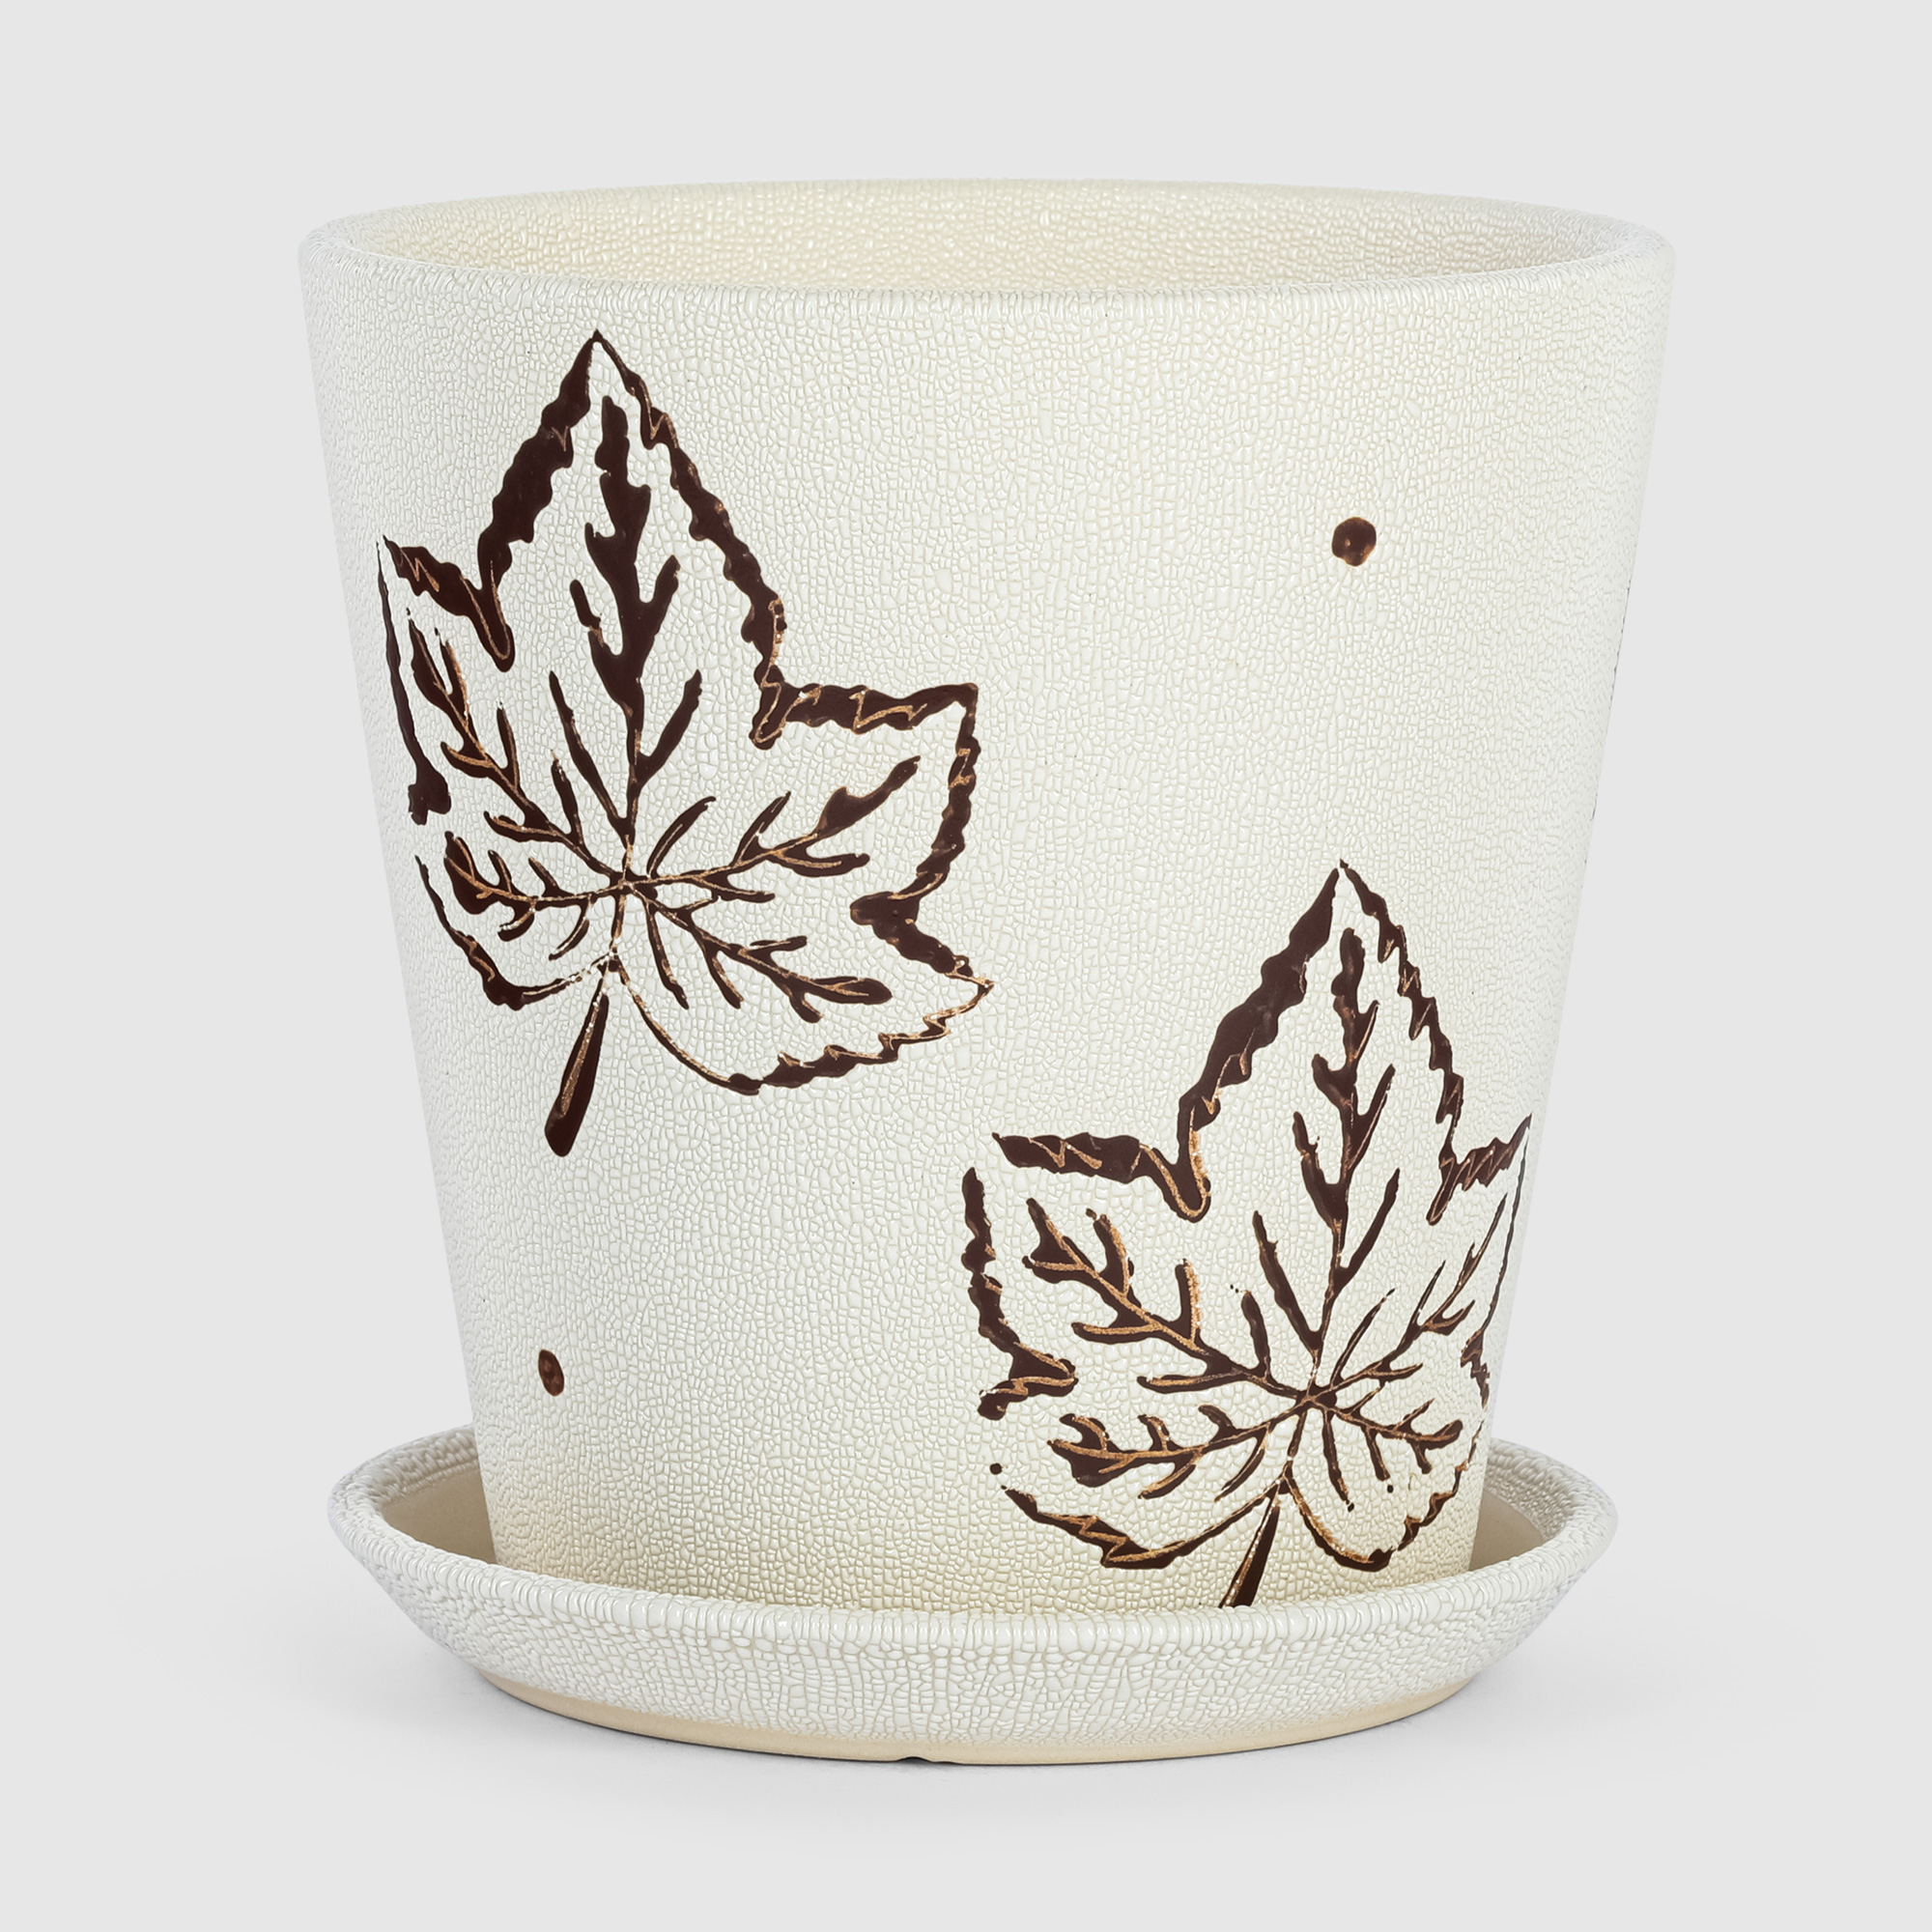 Кашпо керамическое для цветов Shine Pots 20x20см белый+листья кашпо керамическое для ов shine pots 20x20см антрацит